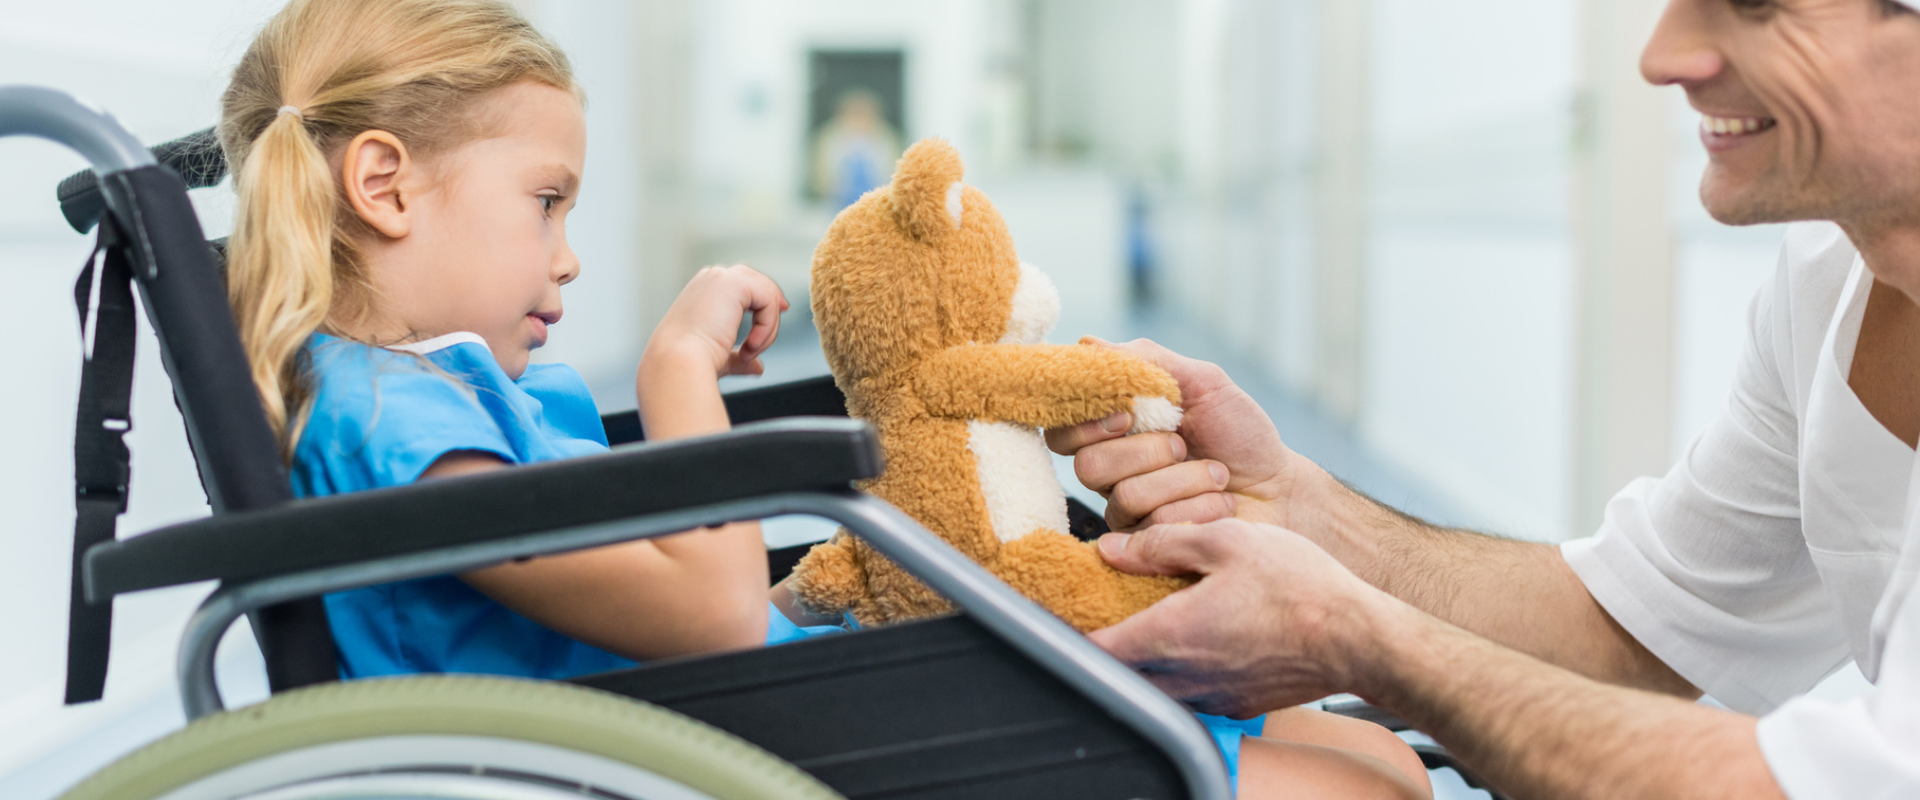 médico segurando um ursinho de pelúcia enquanto brinca com sua paciente criança que está na cadeira de rodas